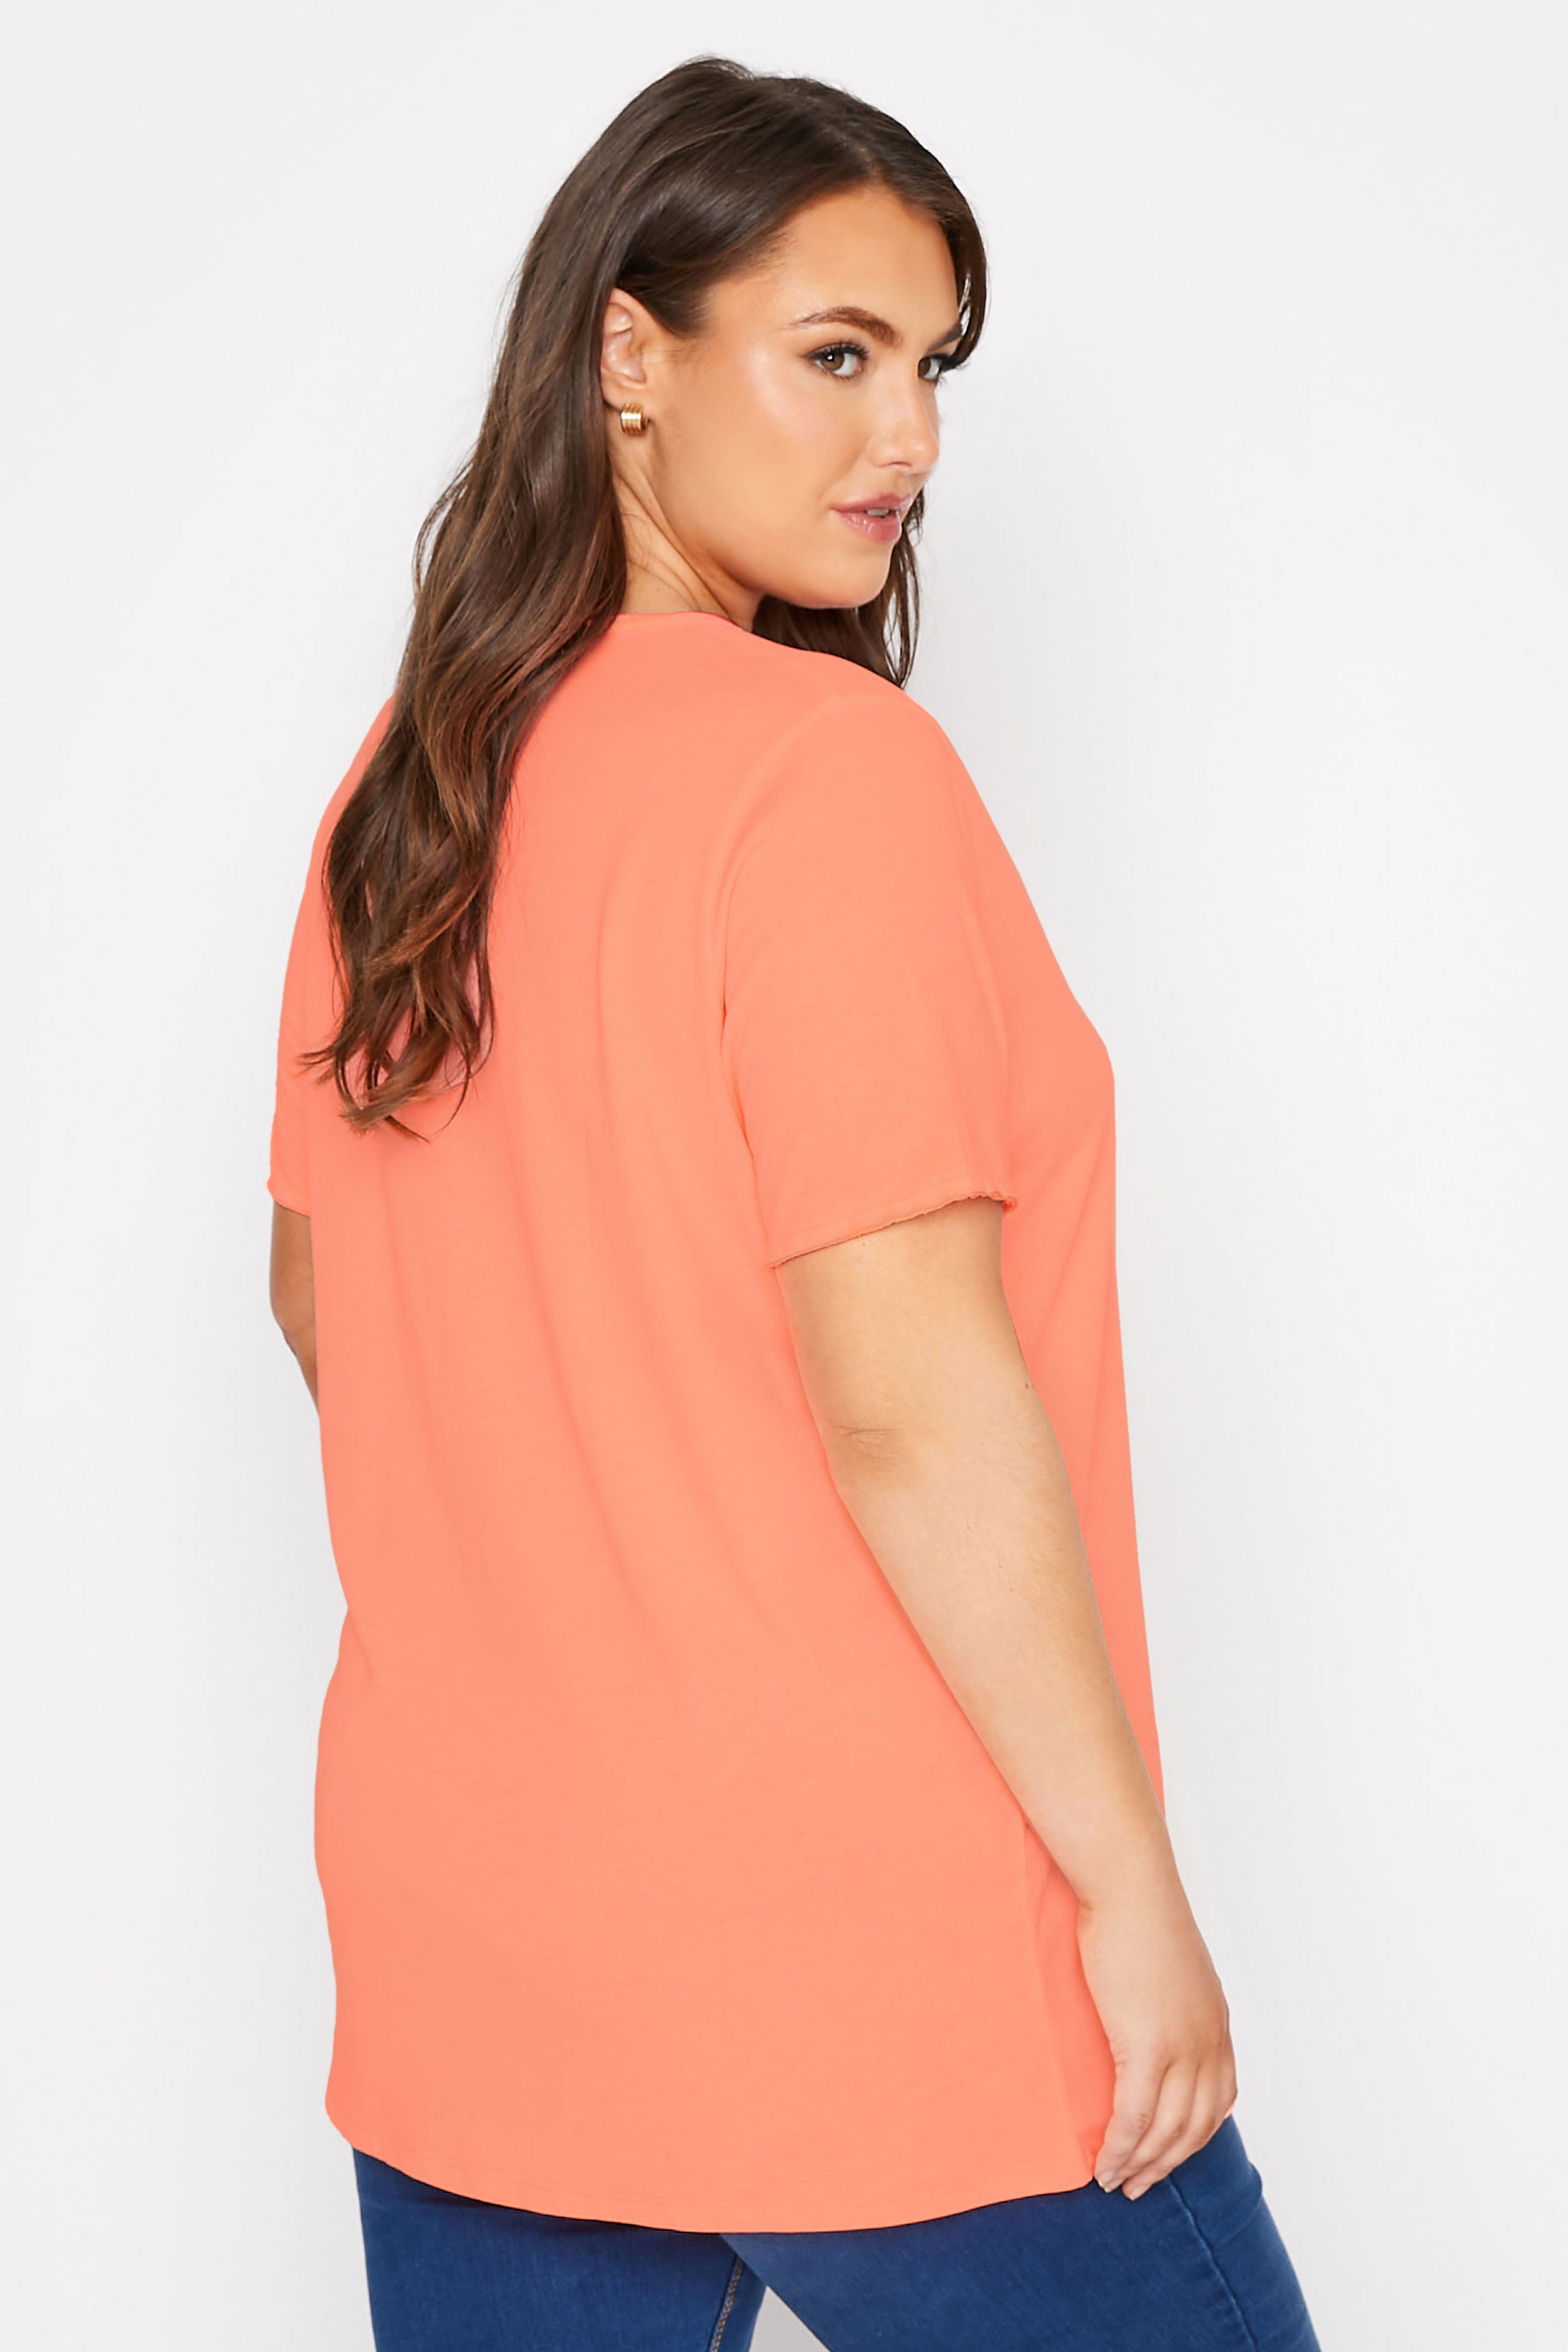 Grande taille  Tops Grande taille  T-Shirts Basiques & Débardeurs | T-Shirt Orange Basique en Jersey Manches Effilochées - YV00601